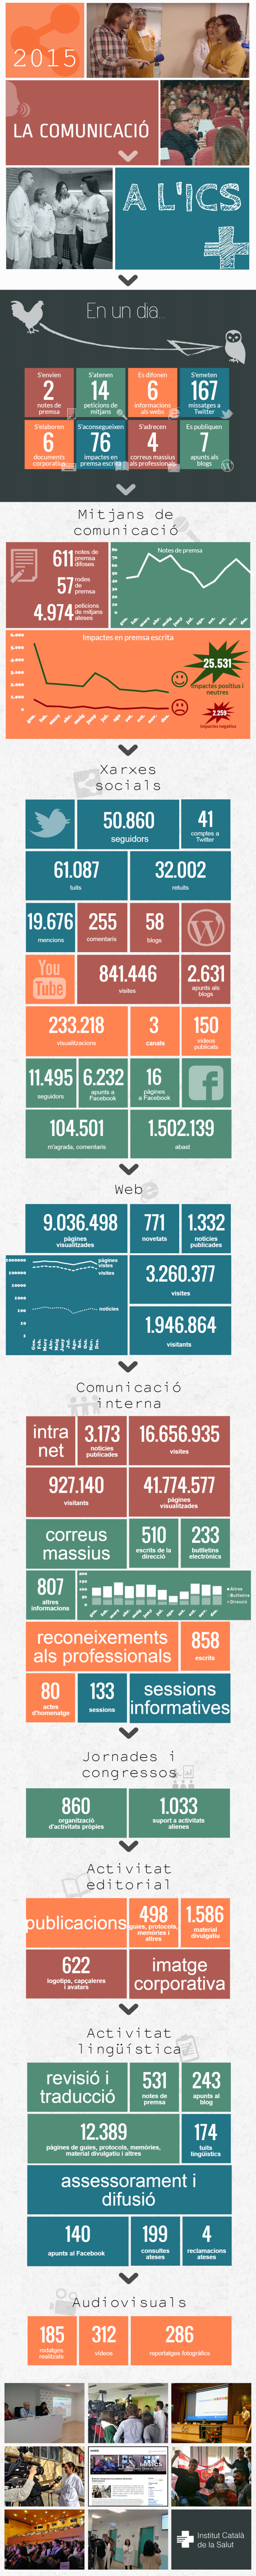 Infografia comunicacio-ics-2015